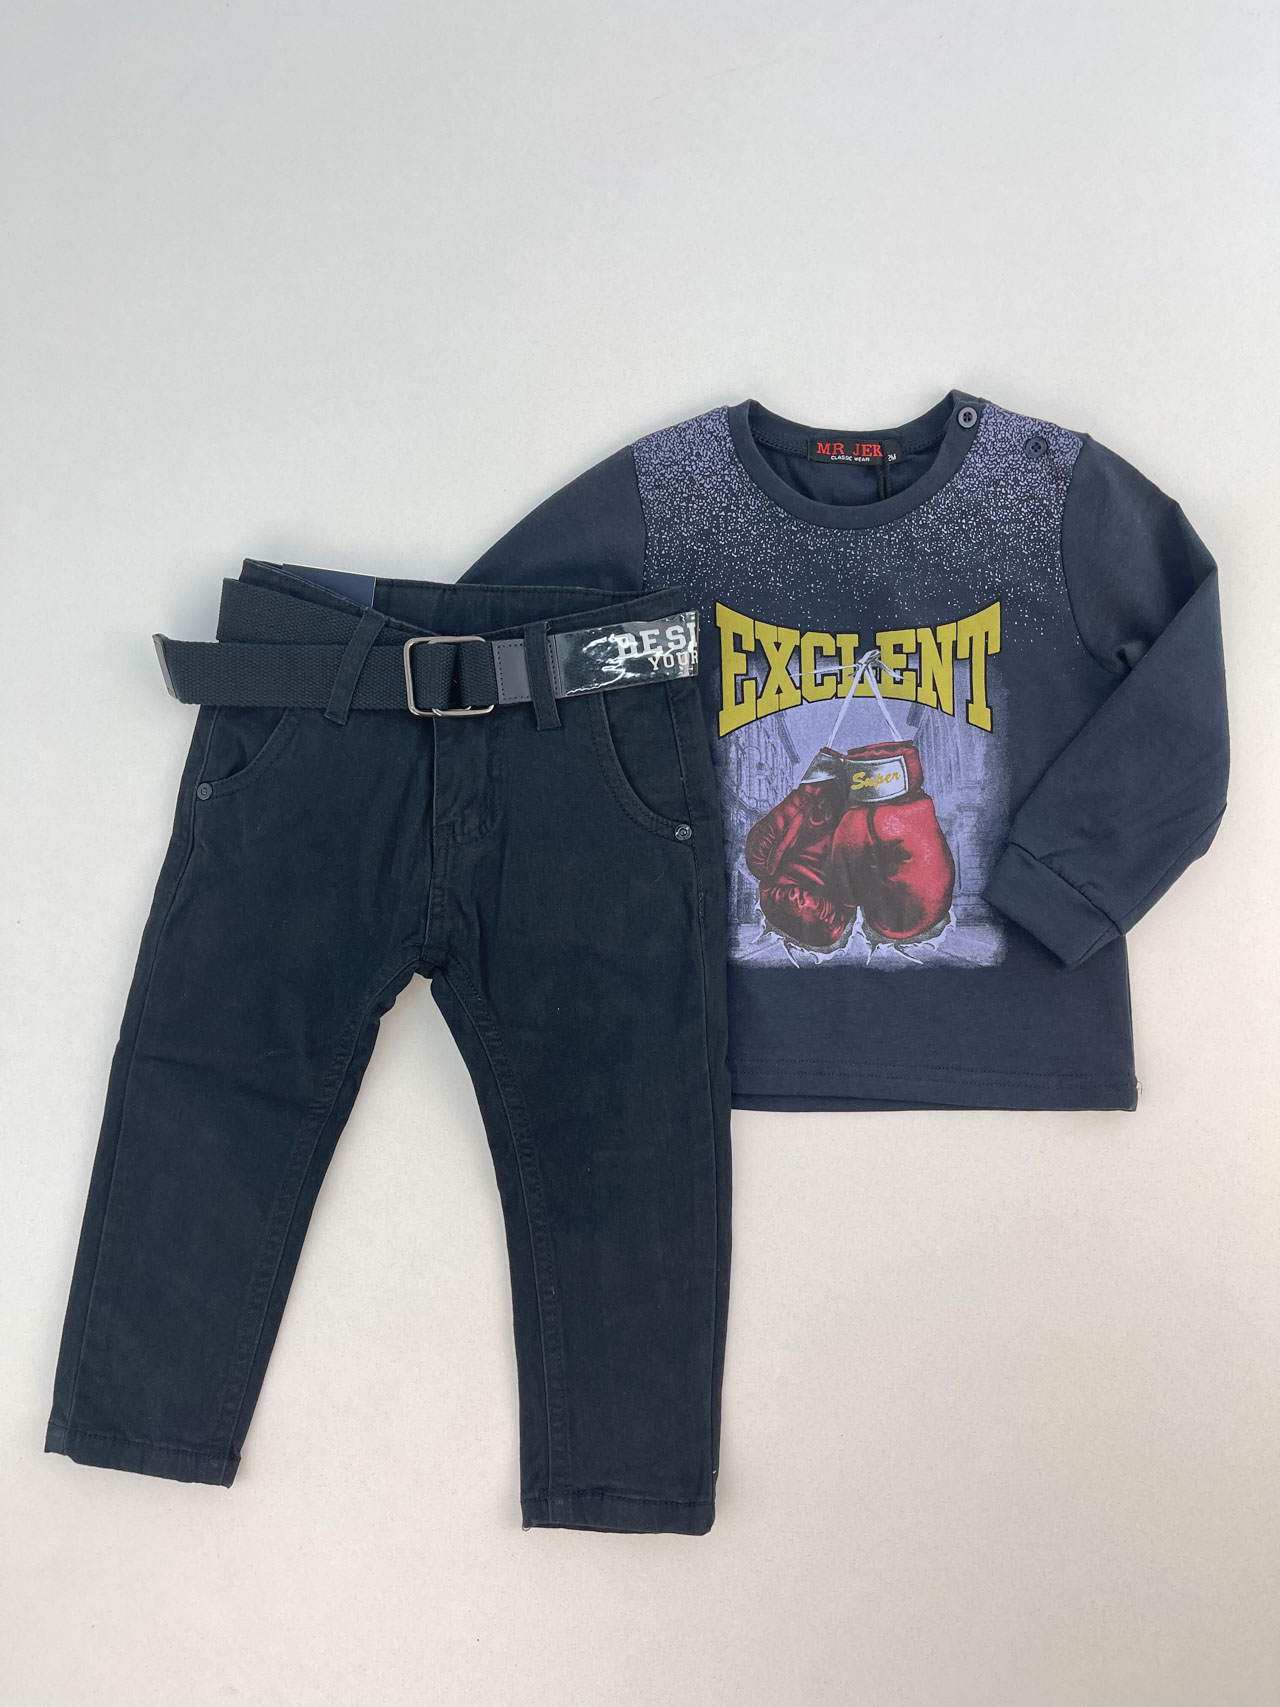 Σετ μπλούζα-παντελόνι αγόρι κωδ. H9-161-6009